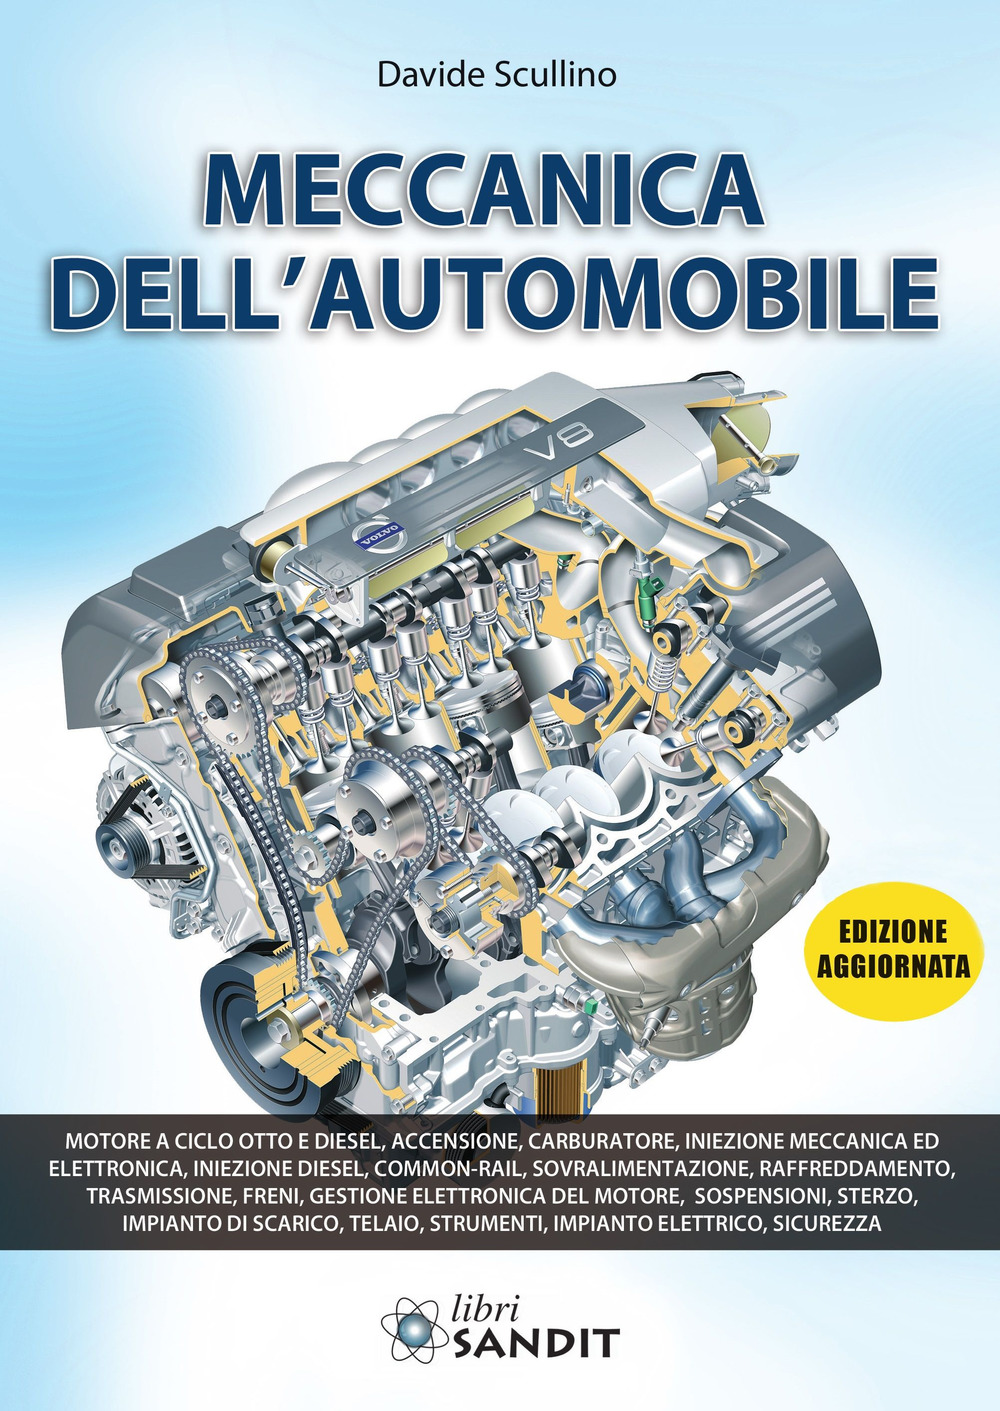 Libri Davide Scullino - Meccanica Dell'automobile NUOVO SIGILLATO, EDIZIONE DEL 27/05/2012 SUBITO DISPONIBILE